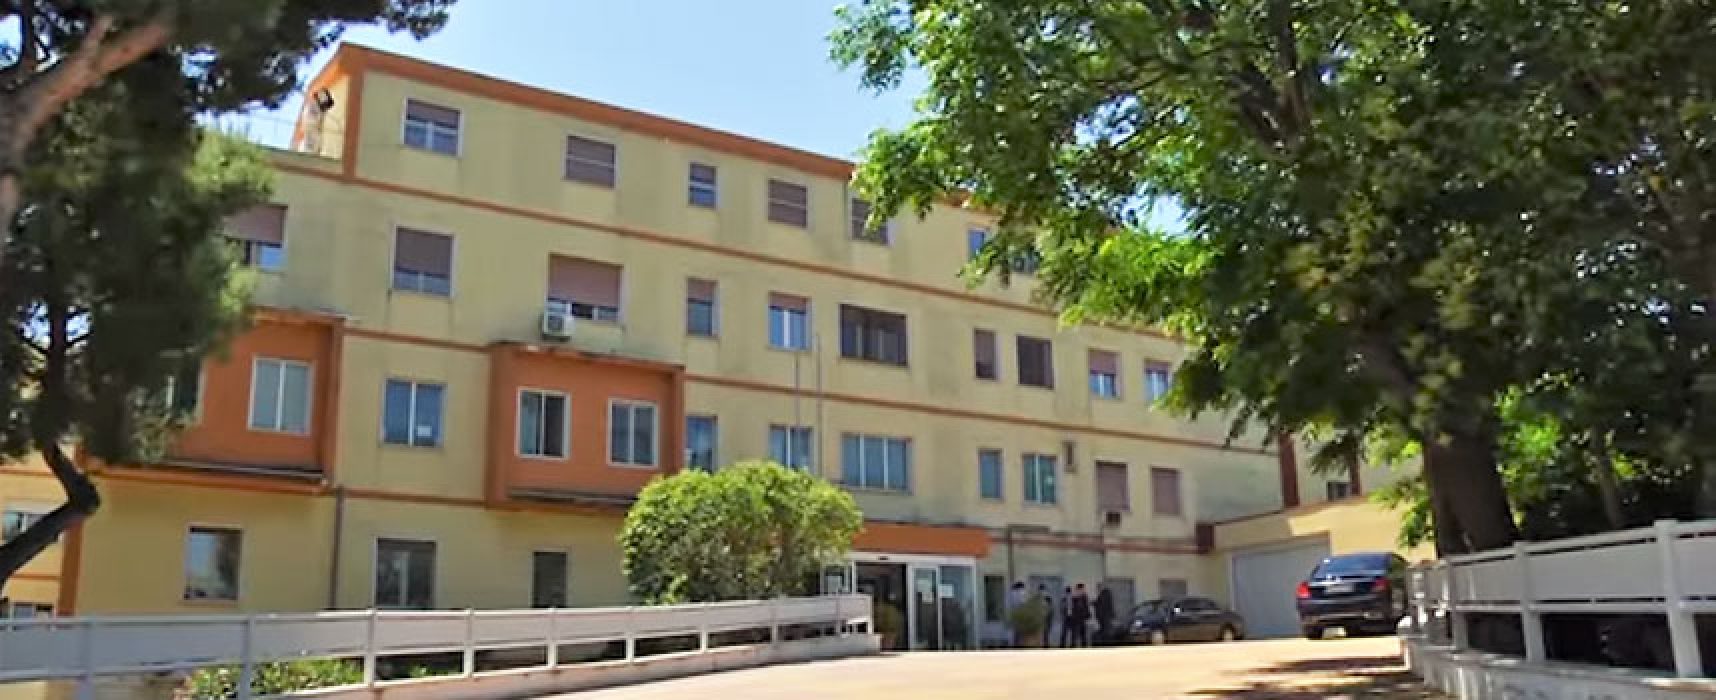 Ospedale Bisceglie, Asl comunica dati aggiornati: “61 casi Covid, 16 in area subintensiva”